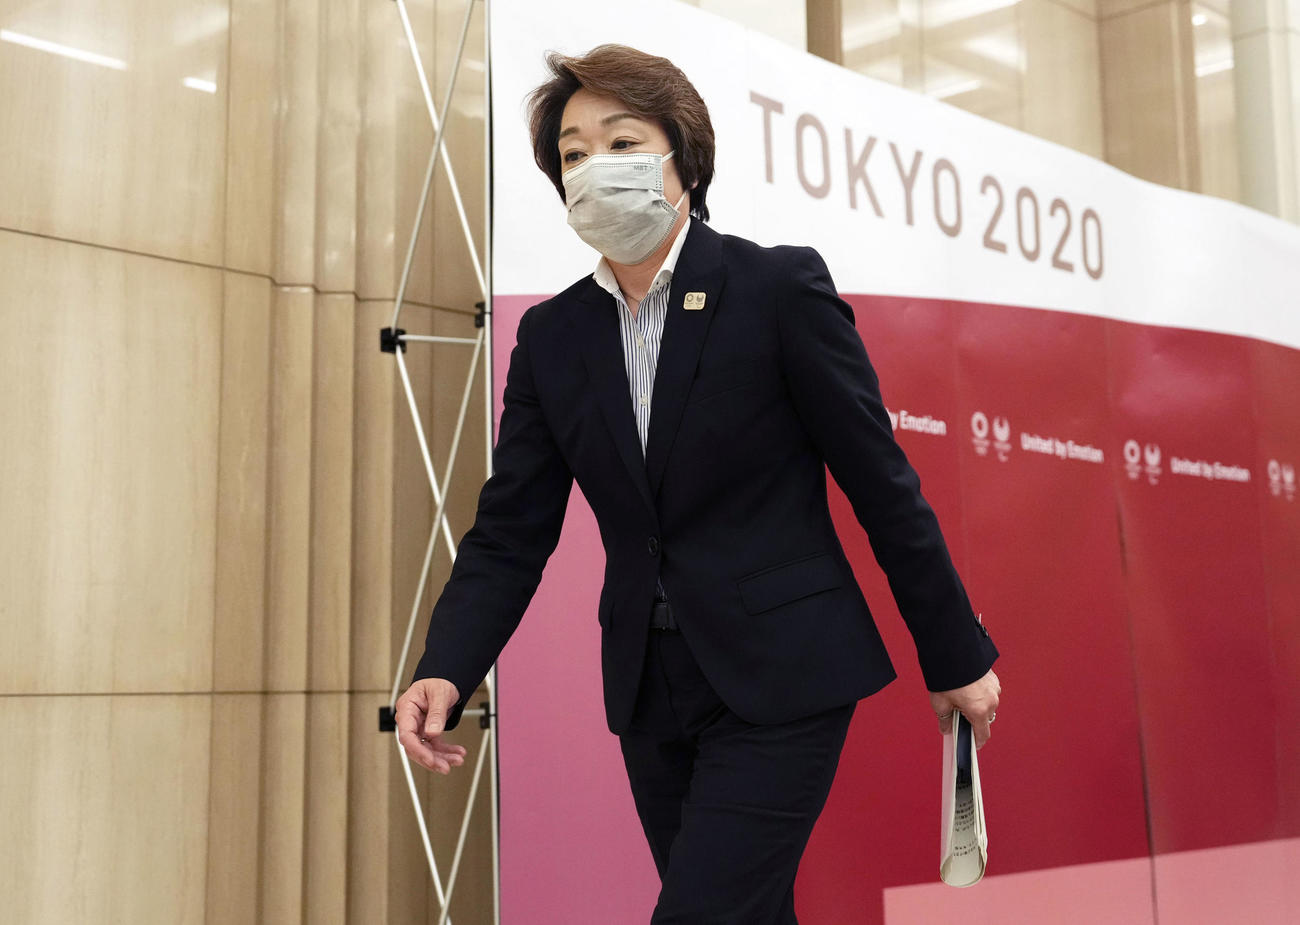 22年6月21日、東京五輪・パラリンピック大会組織委員会の理事会後の記者会見を終えた橋本聖子会長